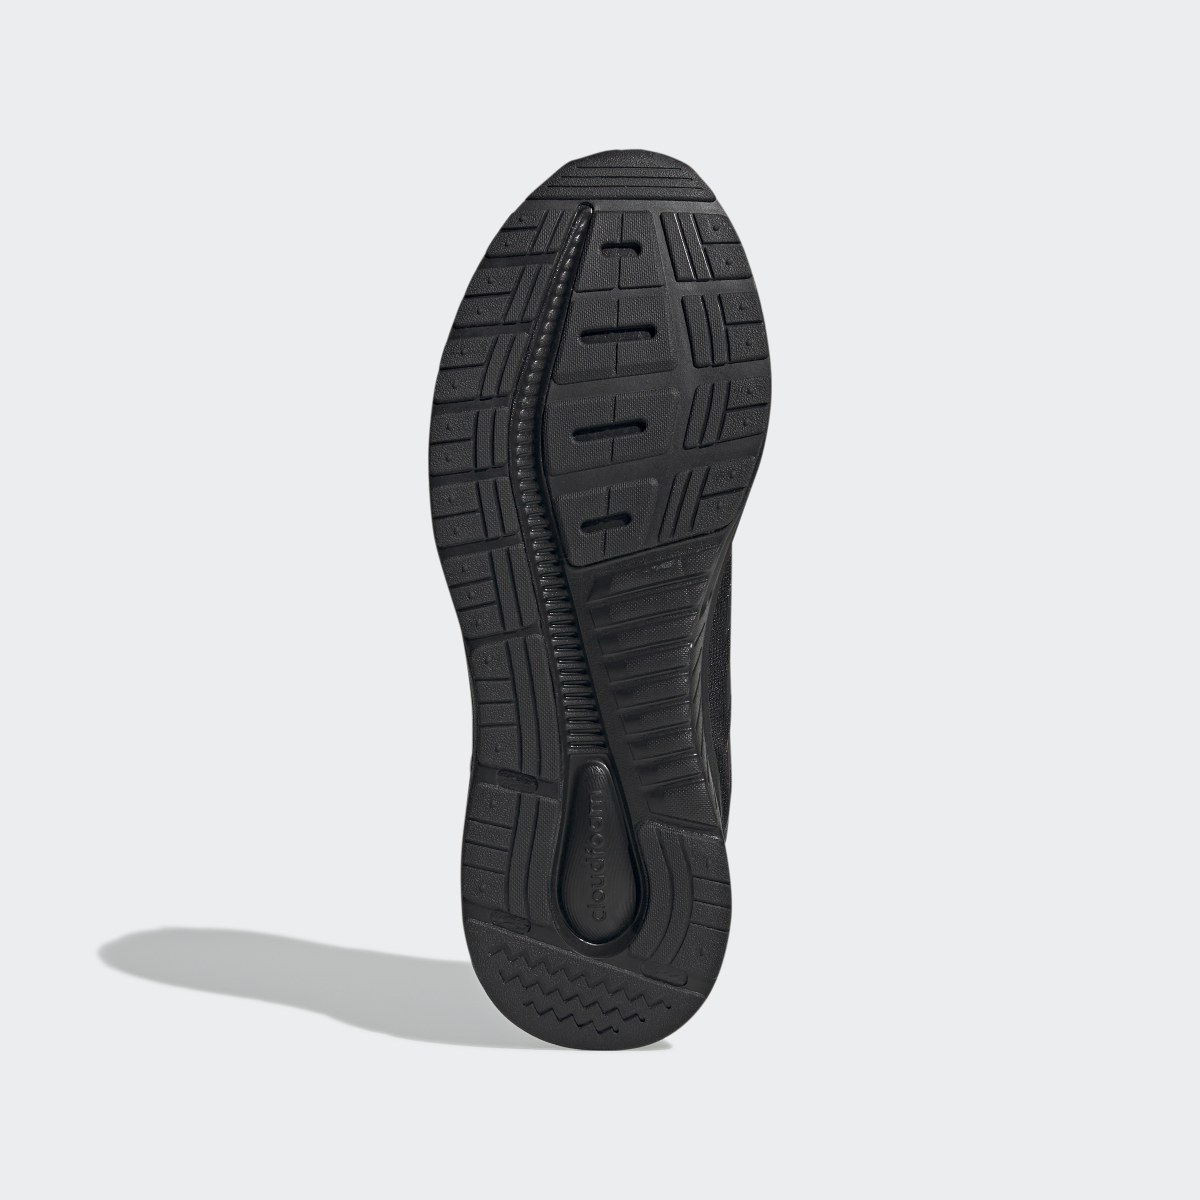 Adidas Galaxy 5 Ayakkabı. 4